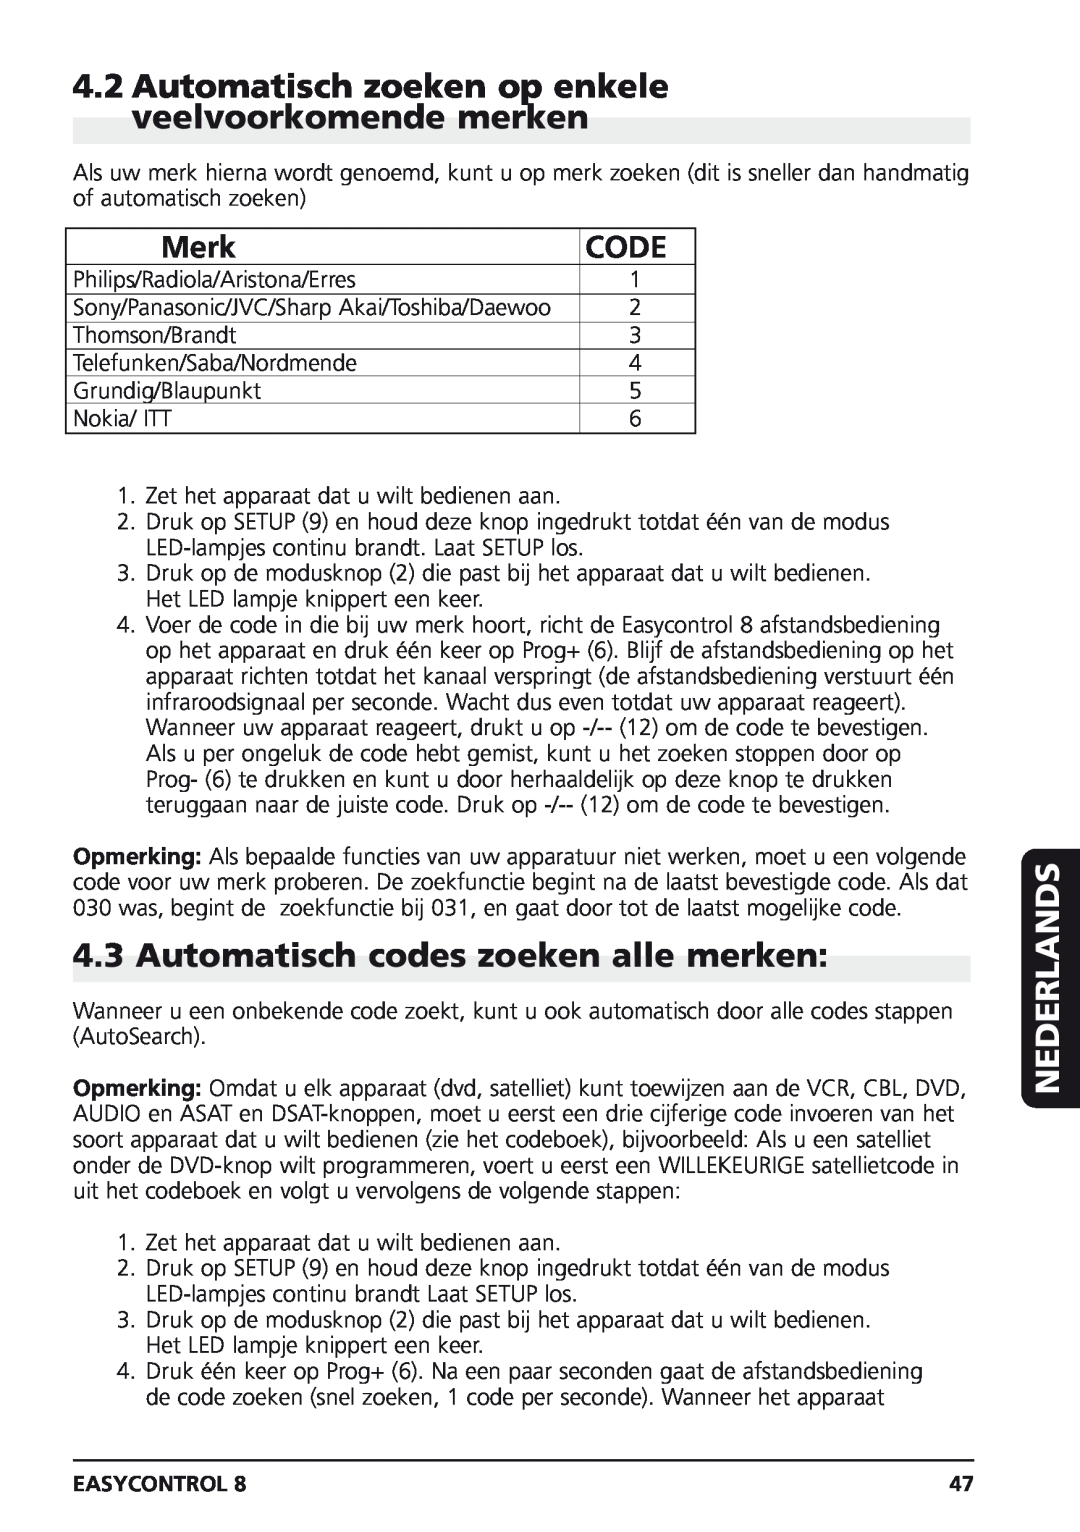 Marmitek Easycontrol 8 Automatisch zoeken op enkele veelvoorkomende merken, Automatisch codes zoeken alle merken, Merk 